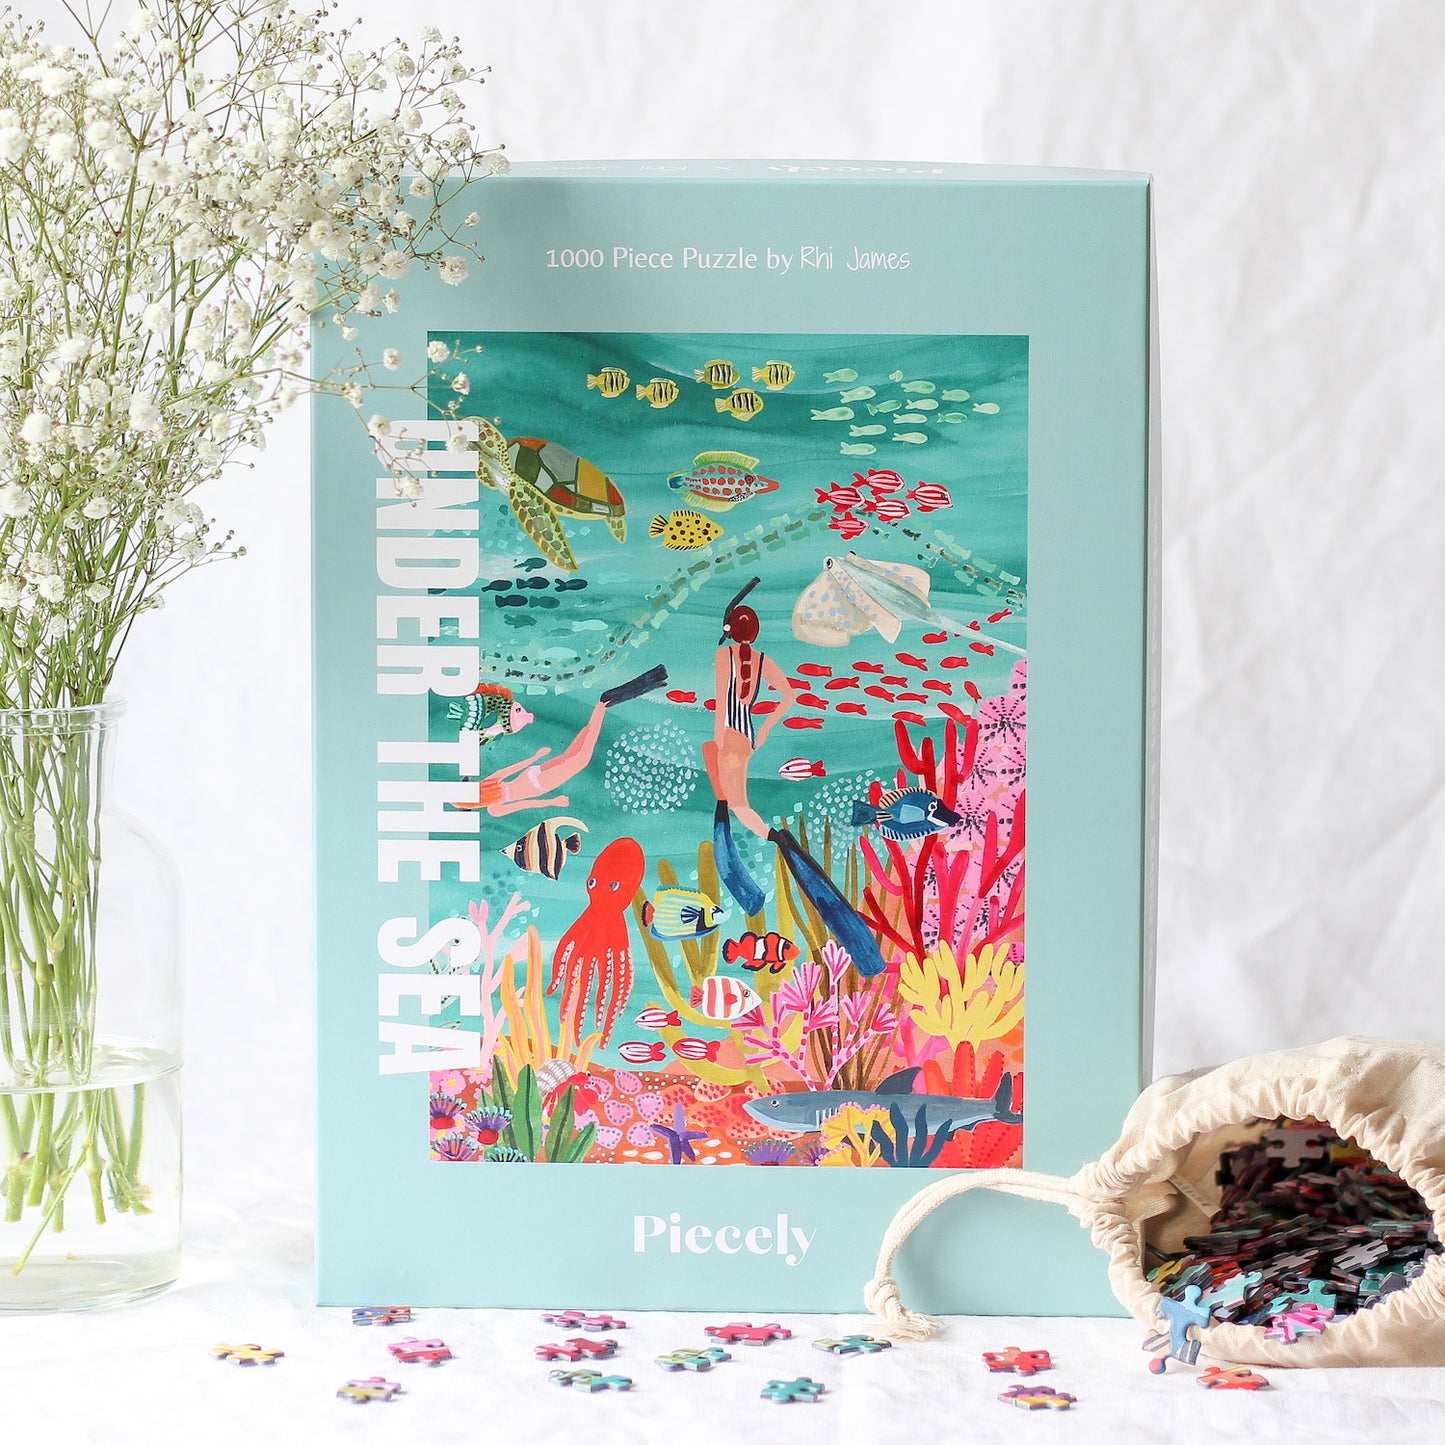 10000-teiliges, nachhaltiges Puzzle für Erwachsene, das eine farbenfrohe Unterwasserlandschaft mit Taucherinnen, Fischen, einem Hai, einer Schildkröte, einem Oktopus und einem Rochen zeigt.